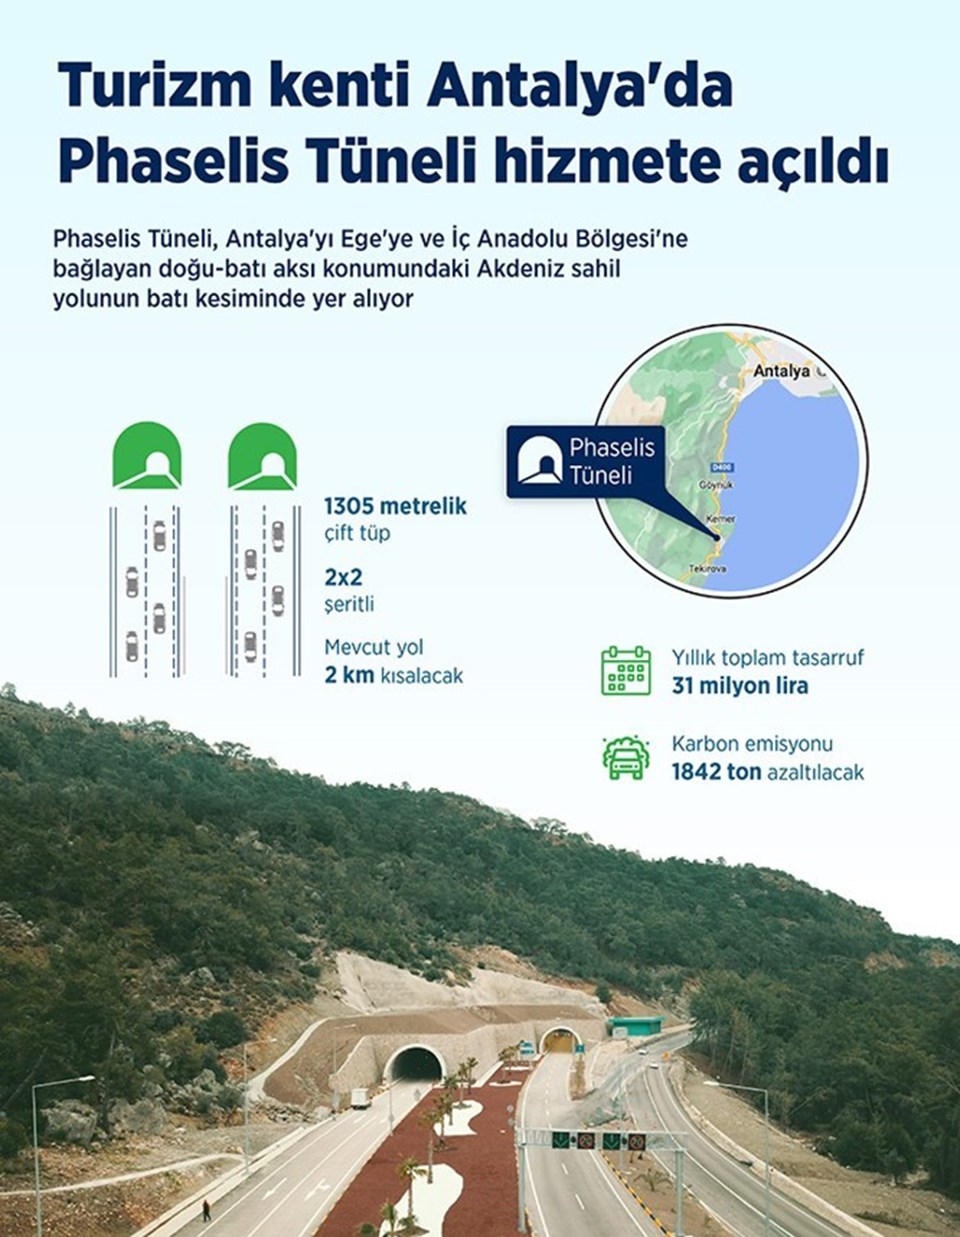 Antalya'da Phaselis Tüneli hizmete açıldı - 1